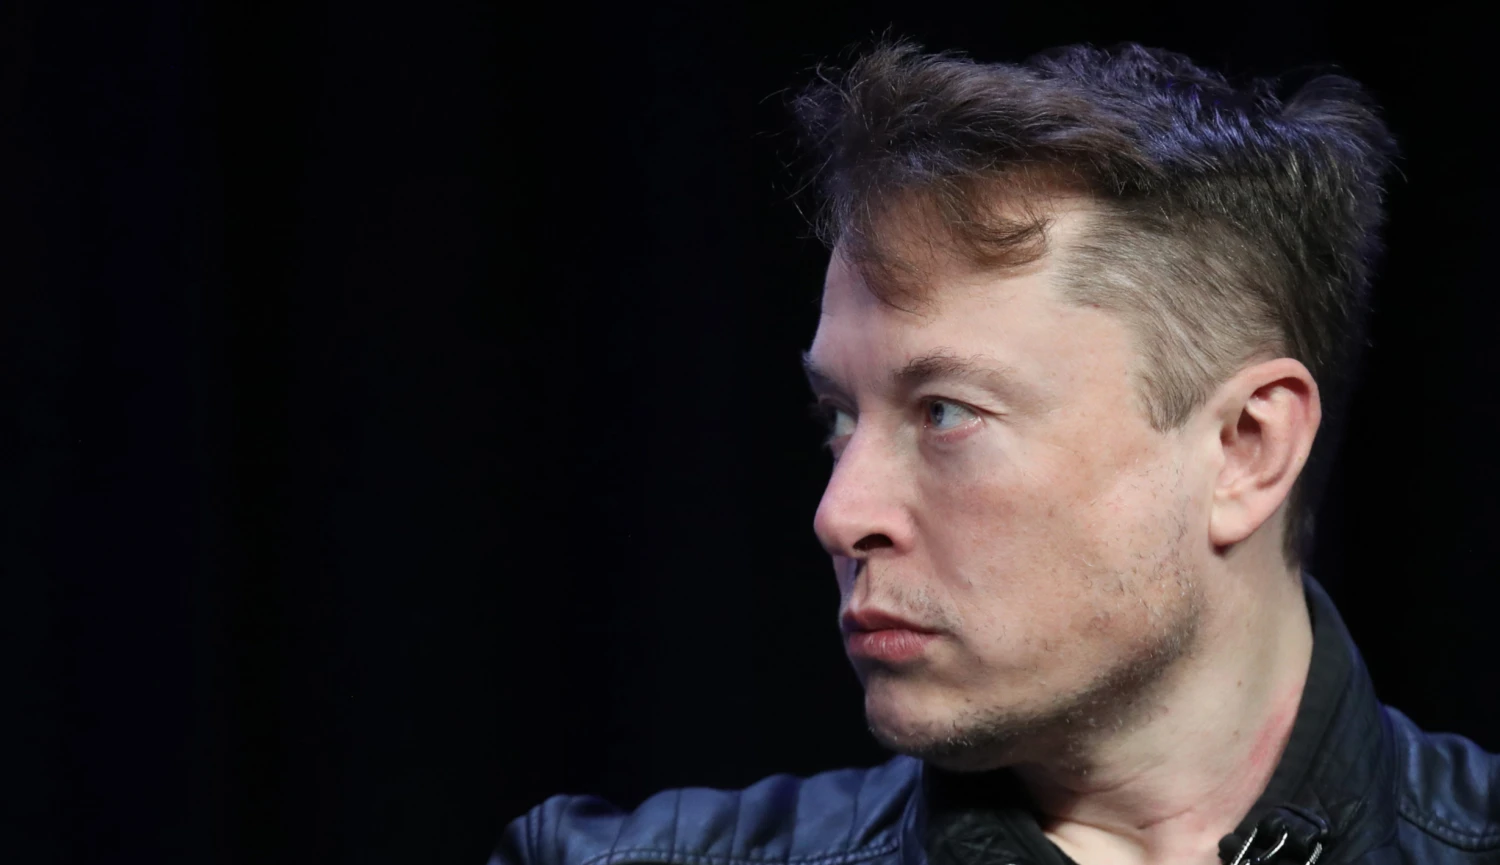 Spor technologických gigantů. Musk žaluje OpenAI a Altmana kvůli neziskové misi